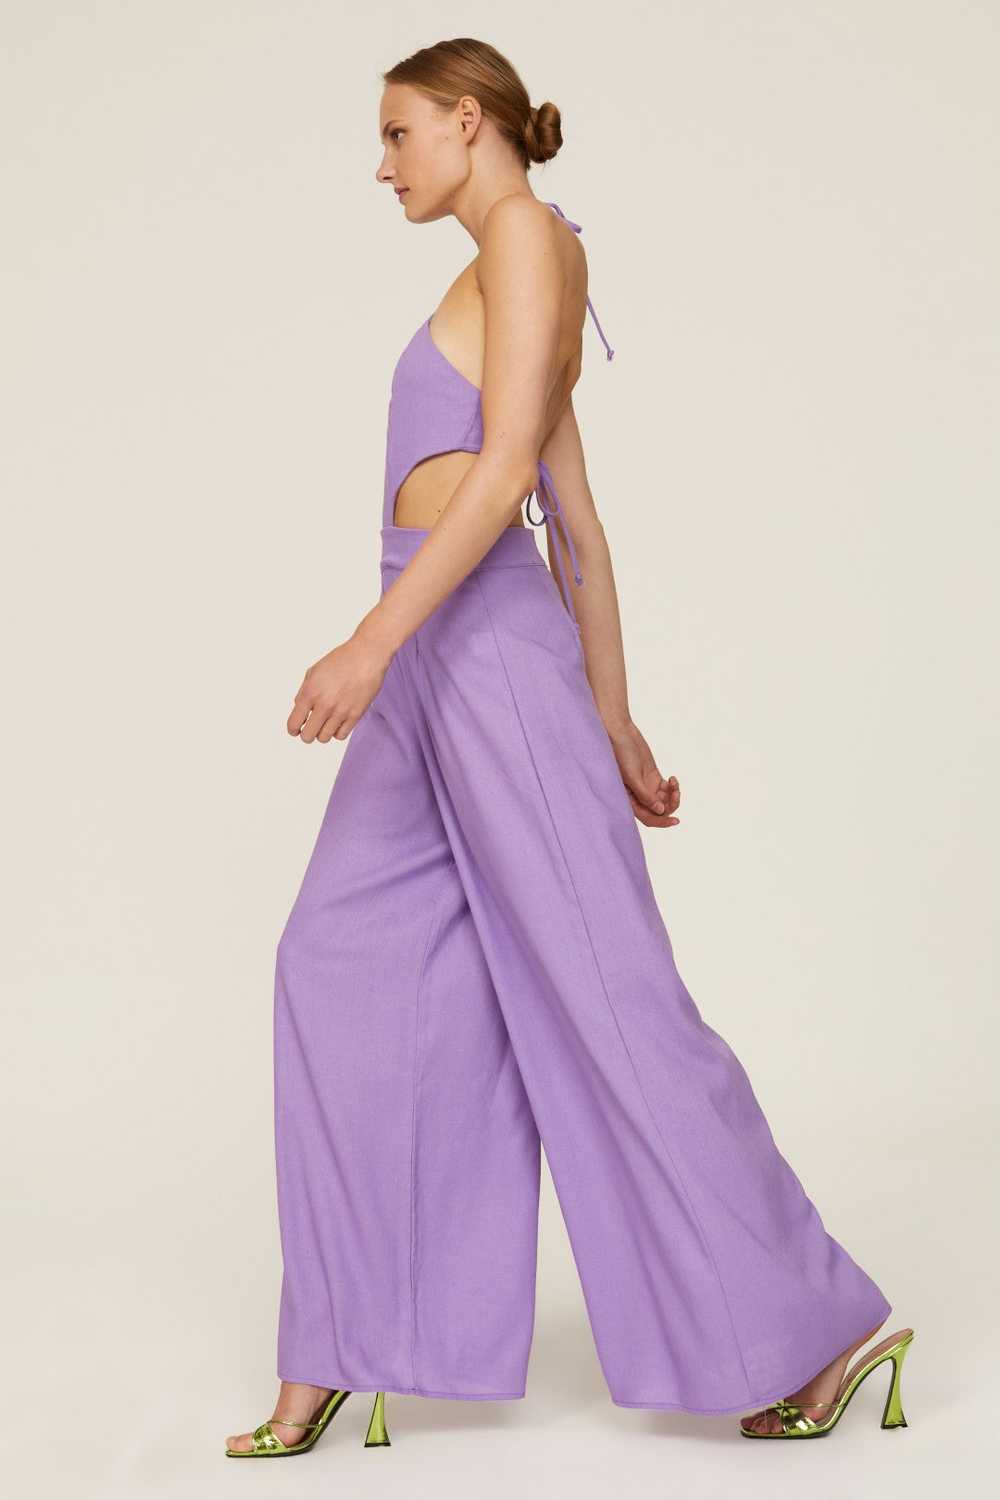 Louna Lavender Backless Jumpsuit - image 2